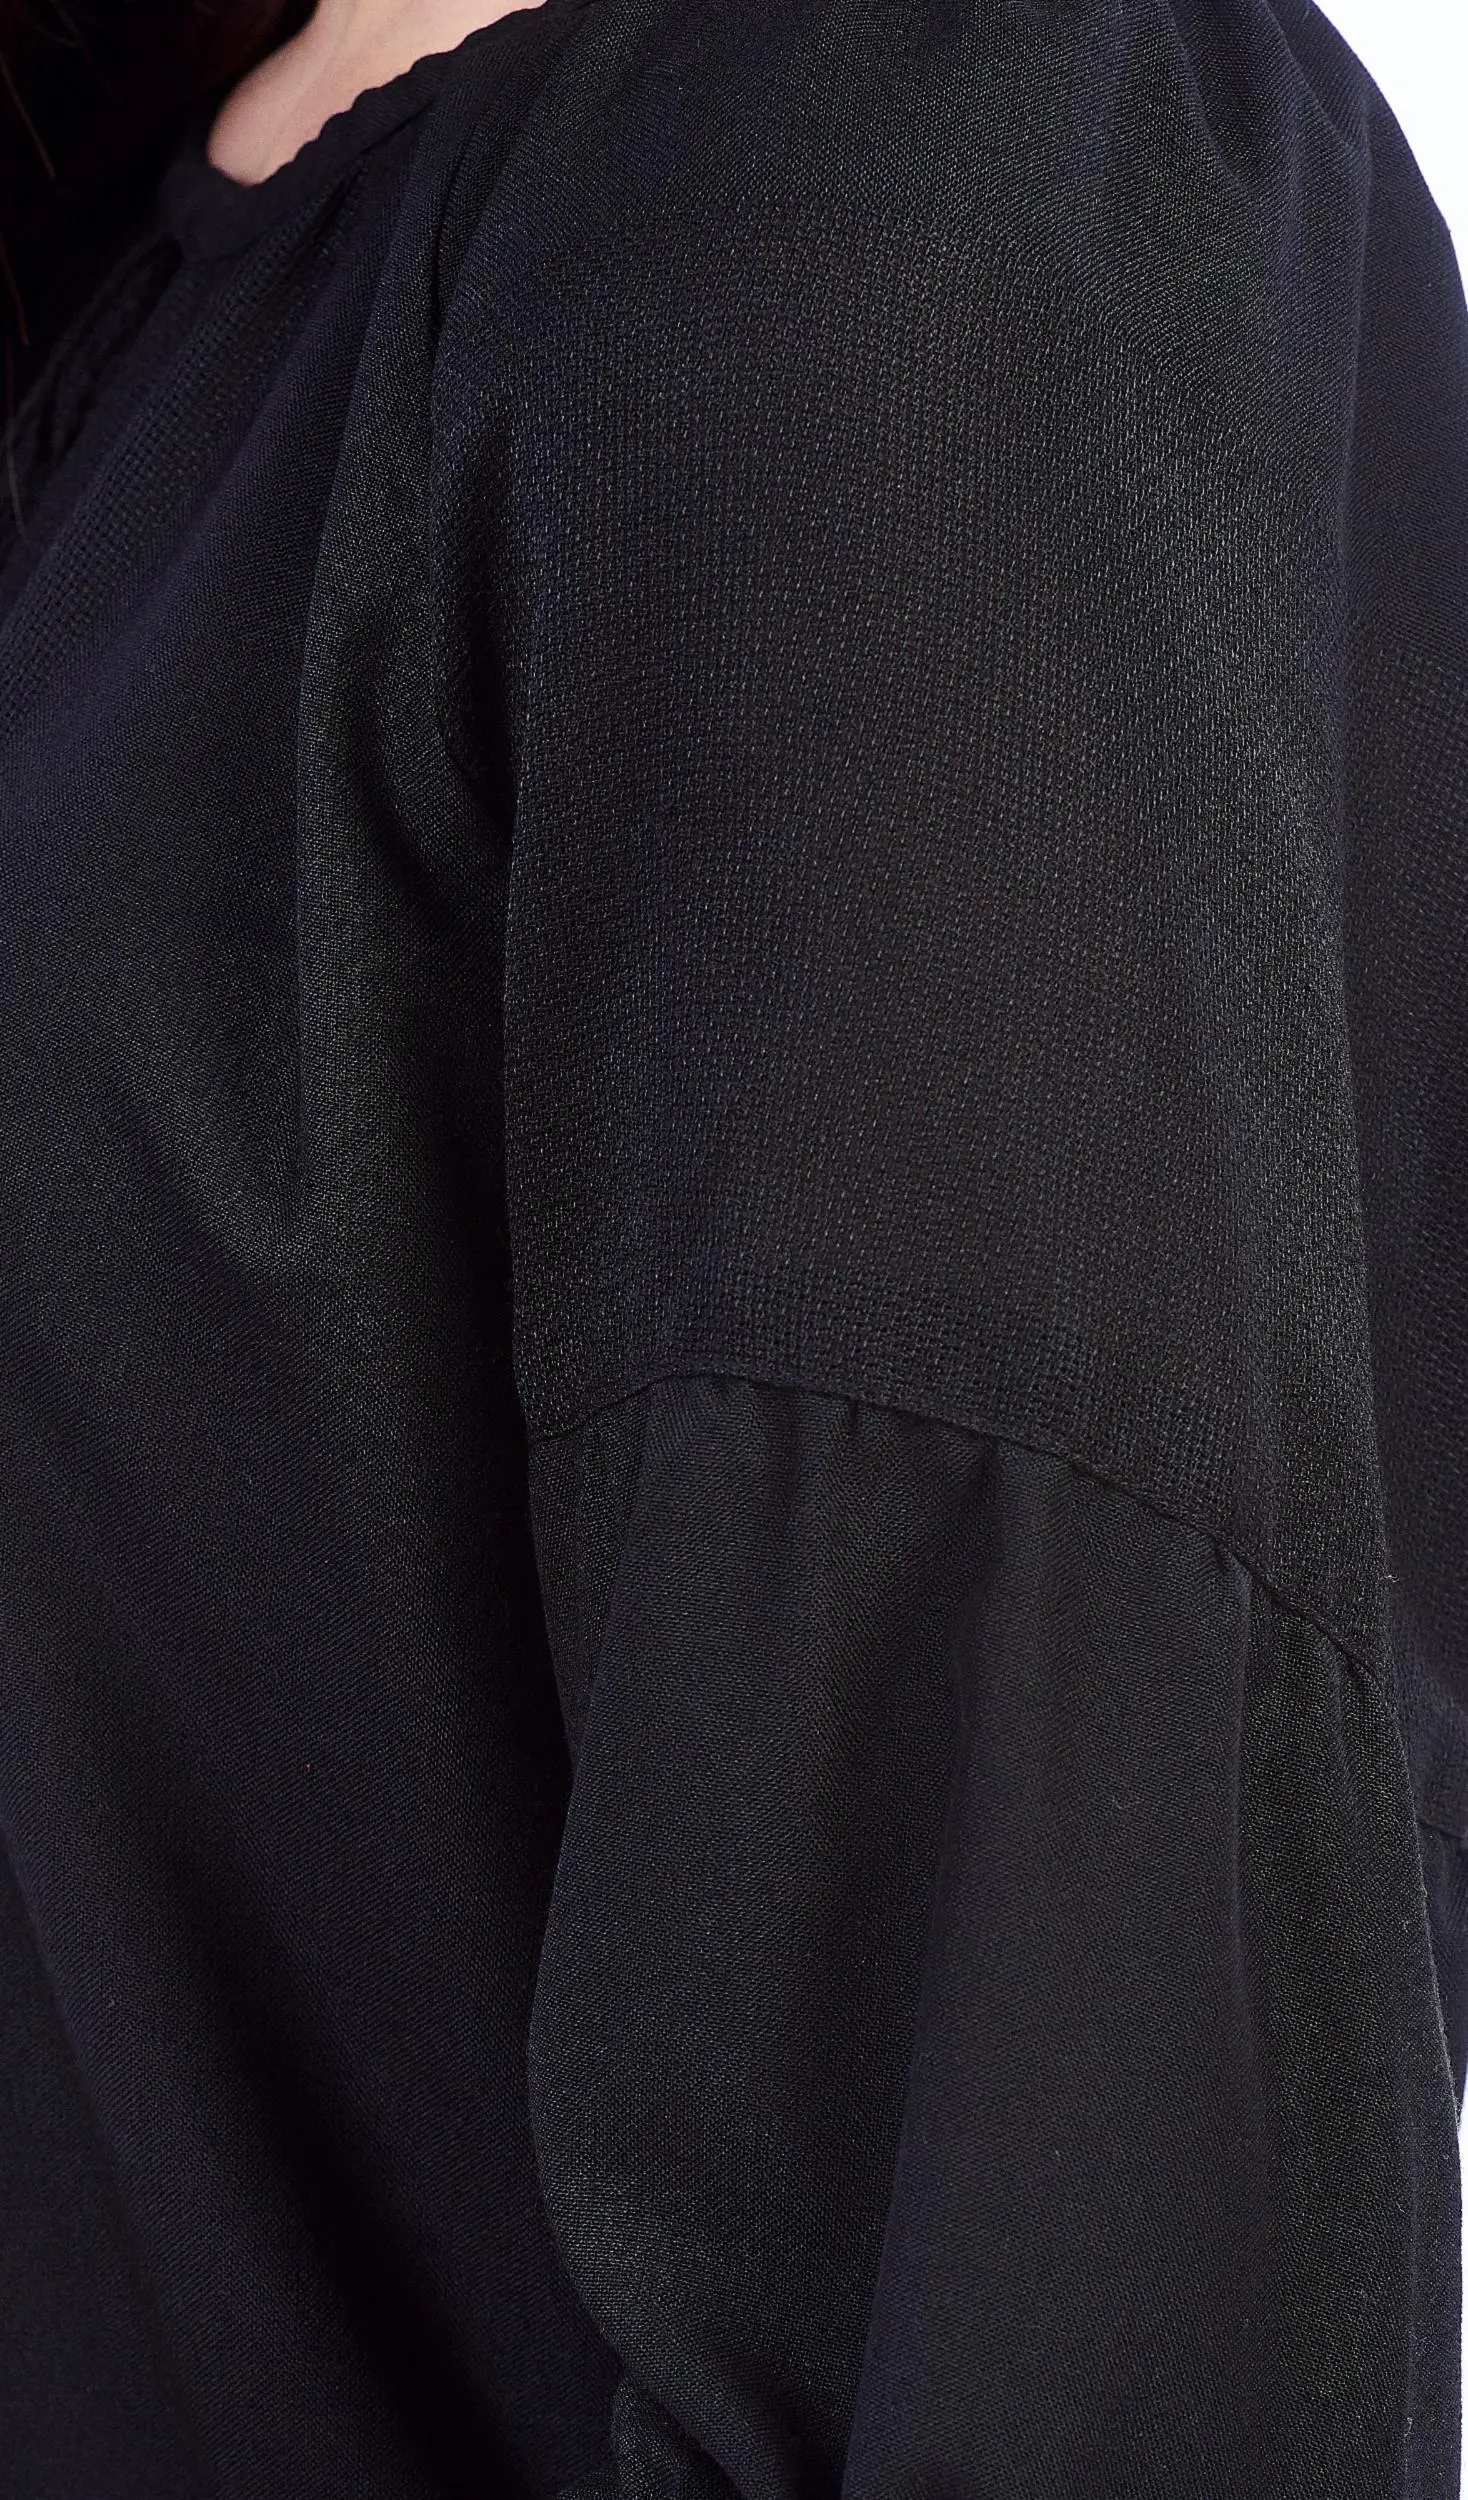 ТПК-172 03-02/09 Сорочка жіноча під вишивку, чорна, 3/4 рукав, розмір 46